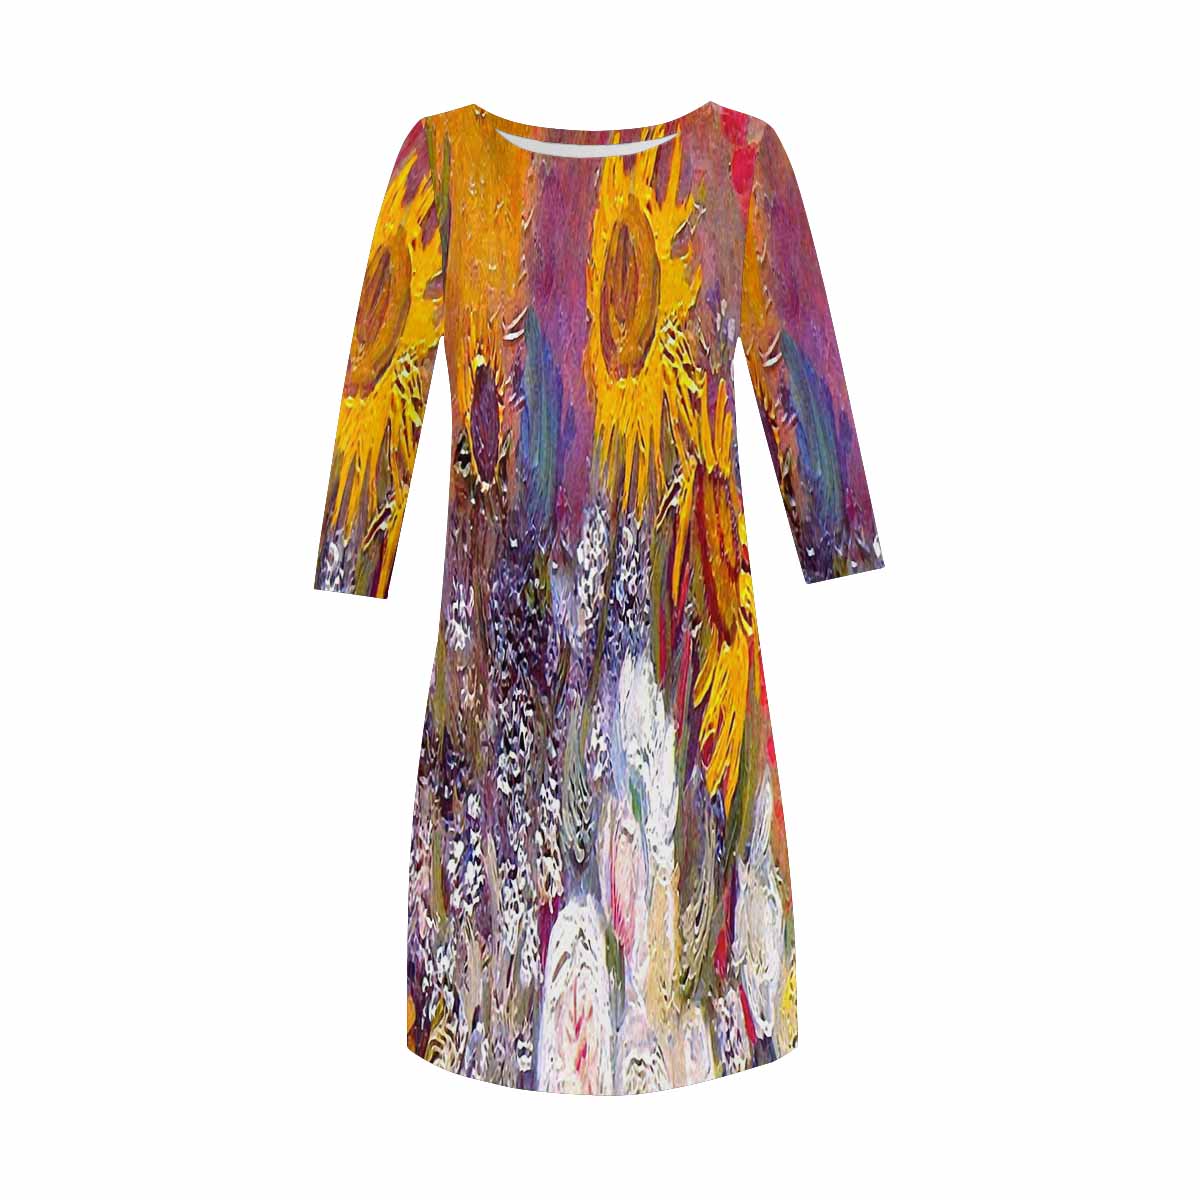 Vintage floral loose dress, model D29532 Design 54